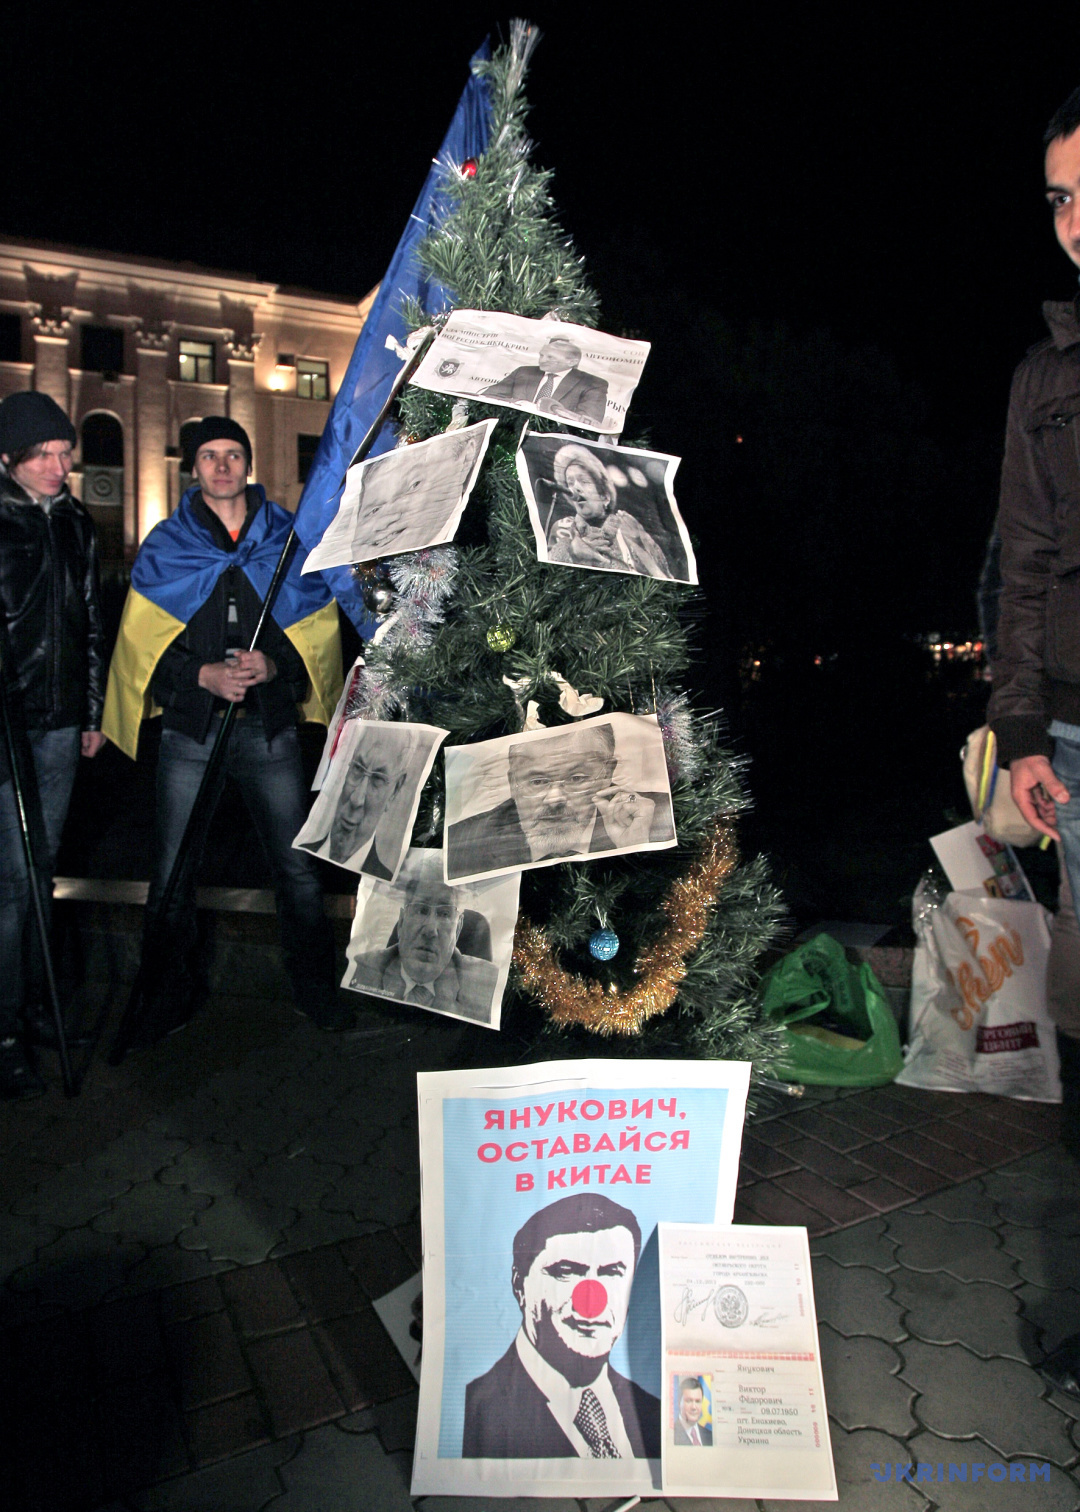 Rassemblement d'étudiants en soutien aux manifestations dans la capitale, Simferopol, Crimée, 4 décembre 2013. / Photo : Arvidas Shemetas